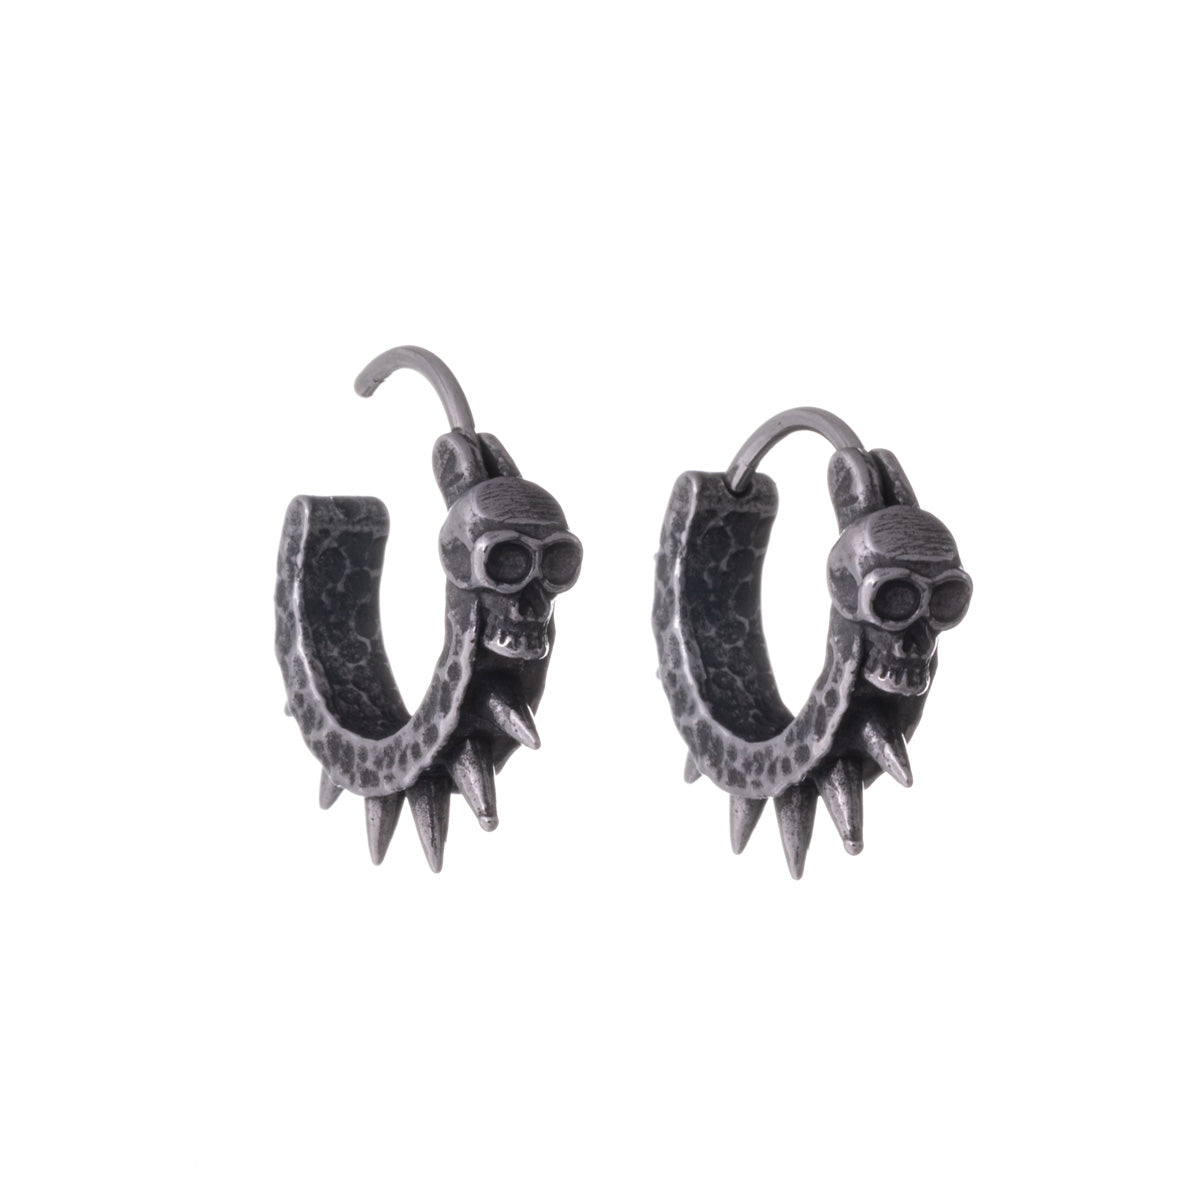 Spiked skull earrings (Steel 316L)